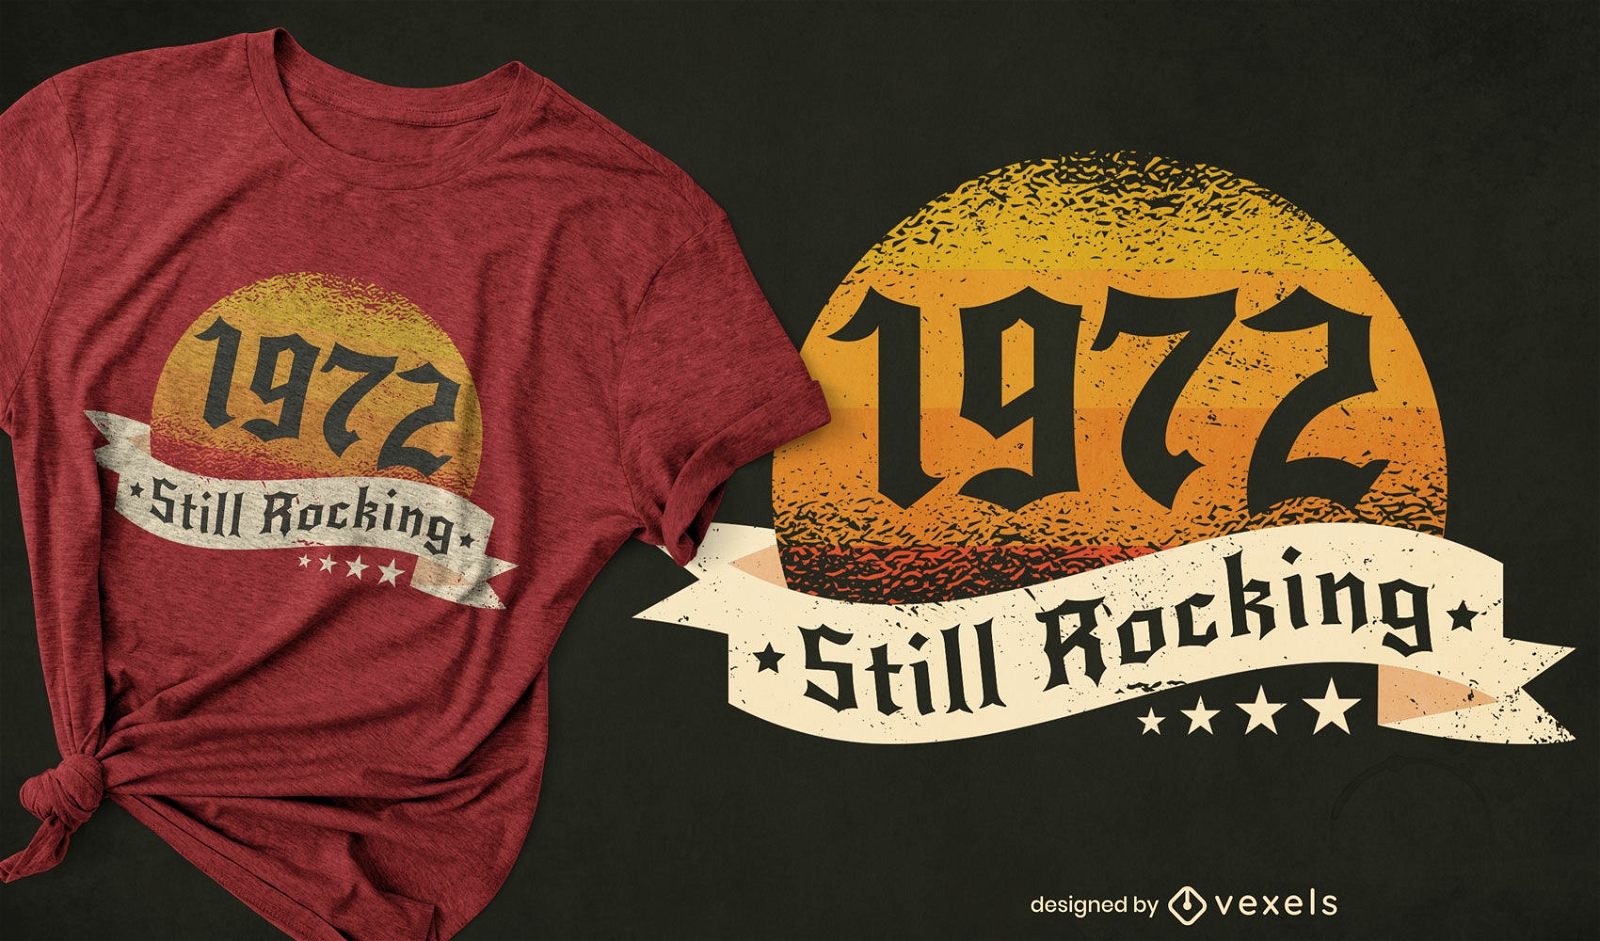 1972 still rocking t-shirt design